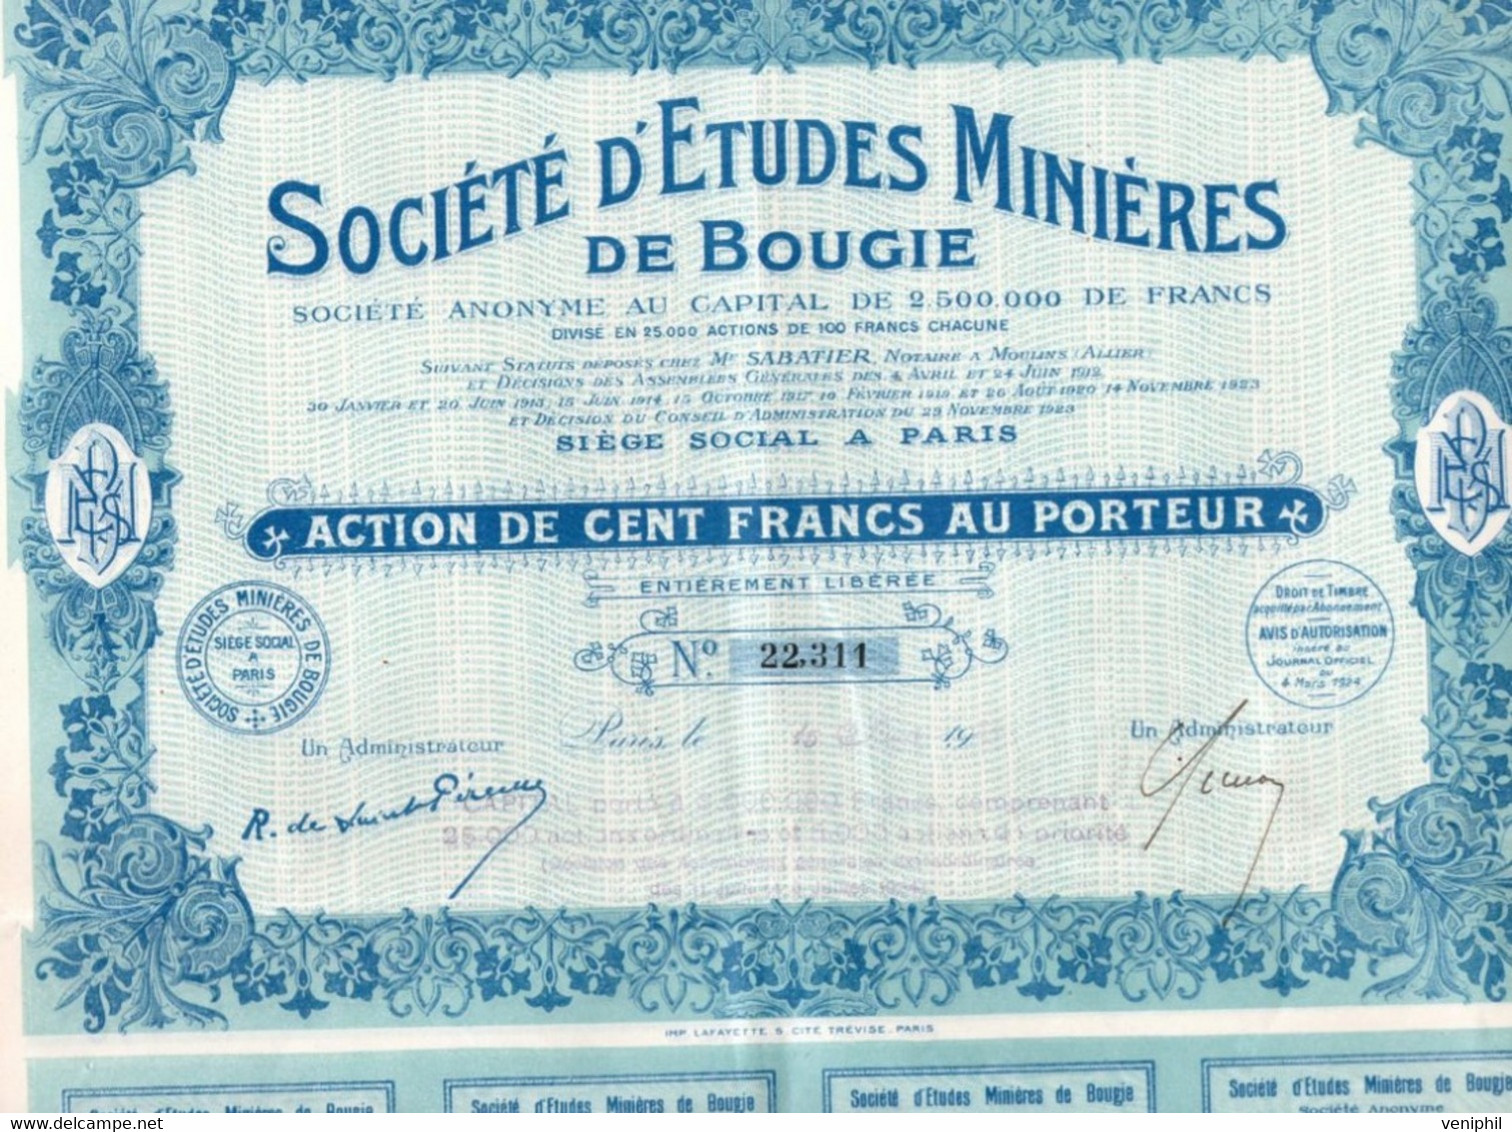 SOCIETE D'ETUDES MINIERES DE BOUGIE - ACTION DE CENT FRANCS -ANNEE 1924 - Miniere